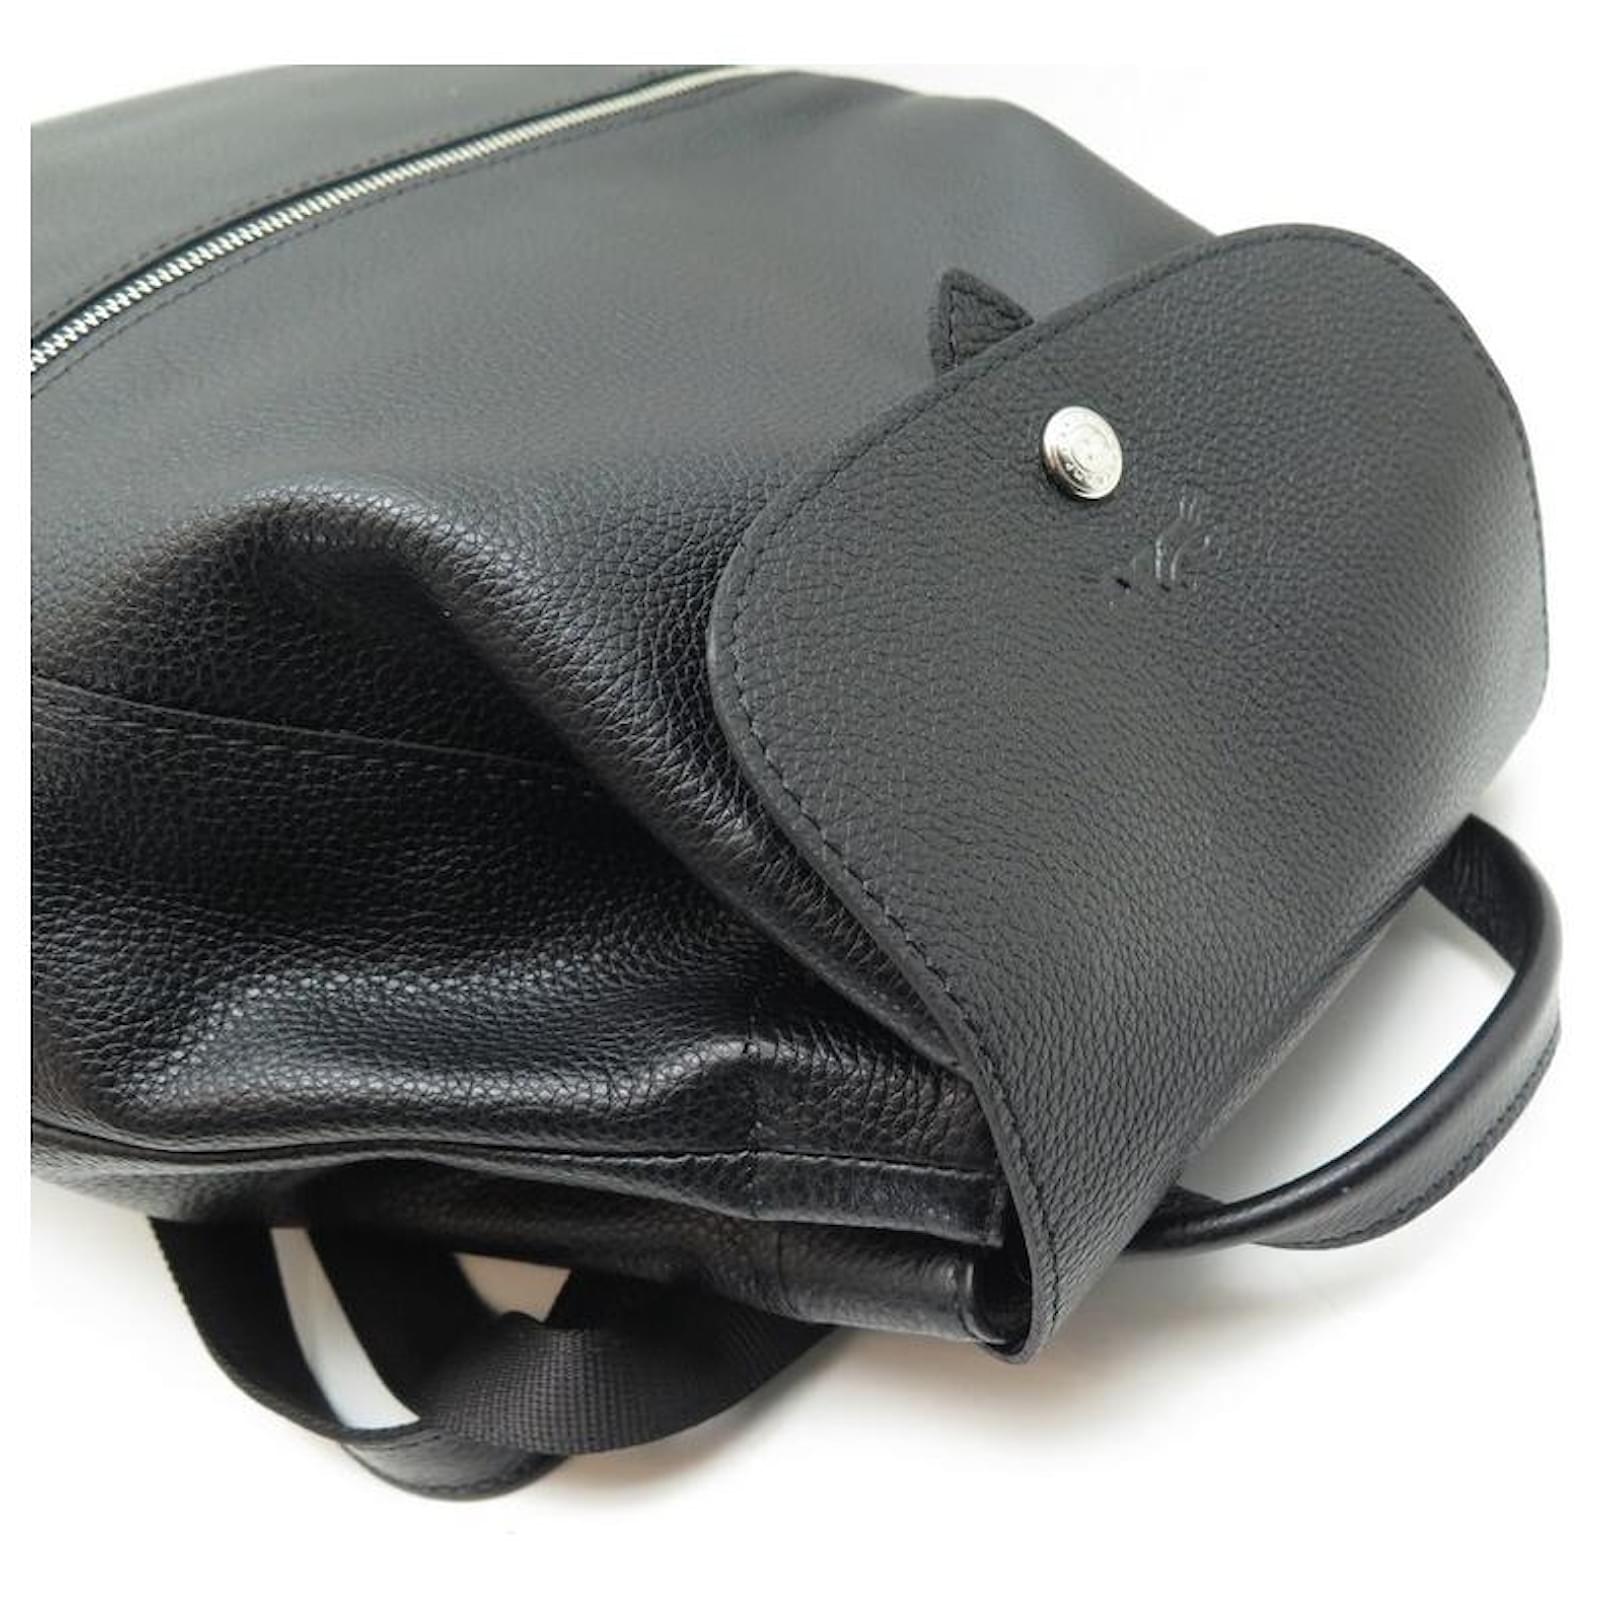 Le Foulonné Backpack Black - Leather (L1617021047)